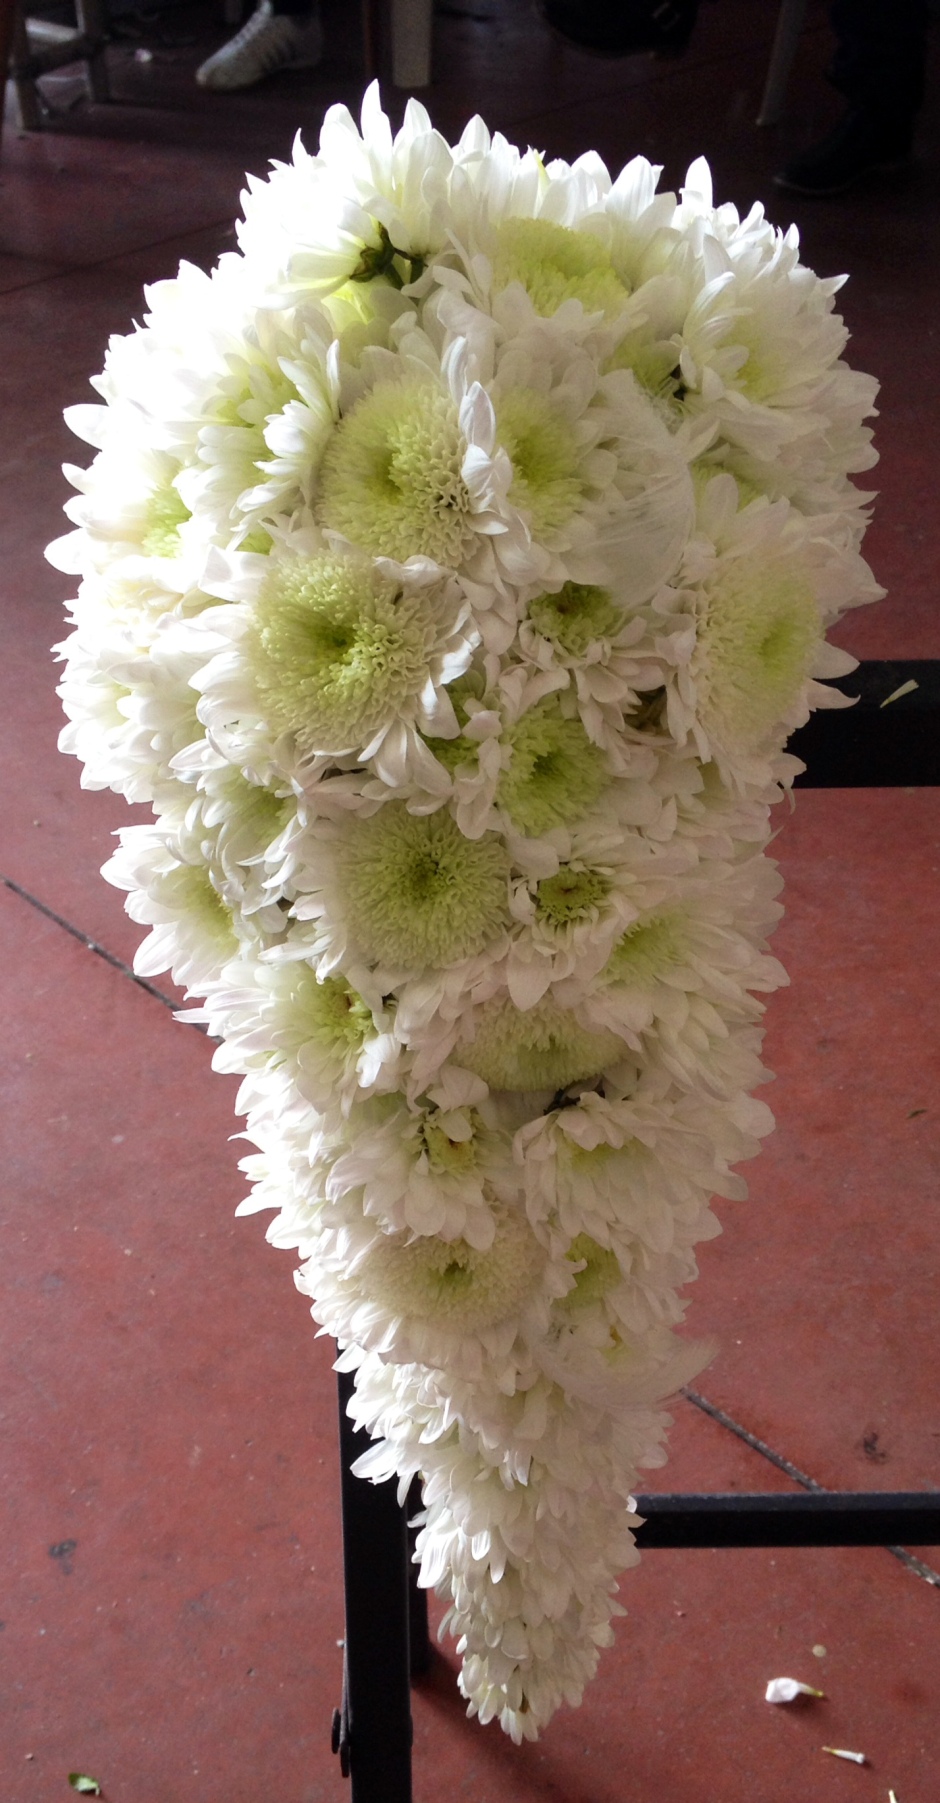 Bouquet realizzato da Stile Libero con cristantemi Stile Libero bouquet realized with chrysanthemum